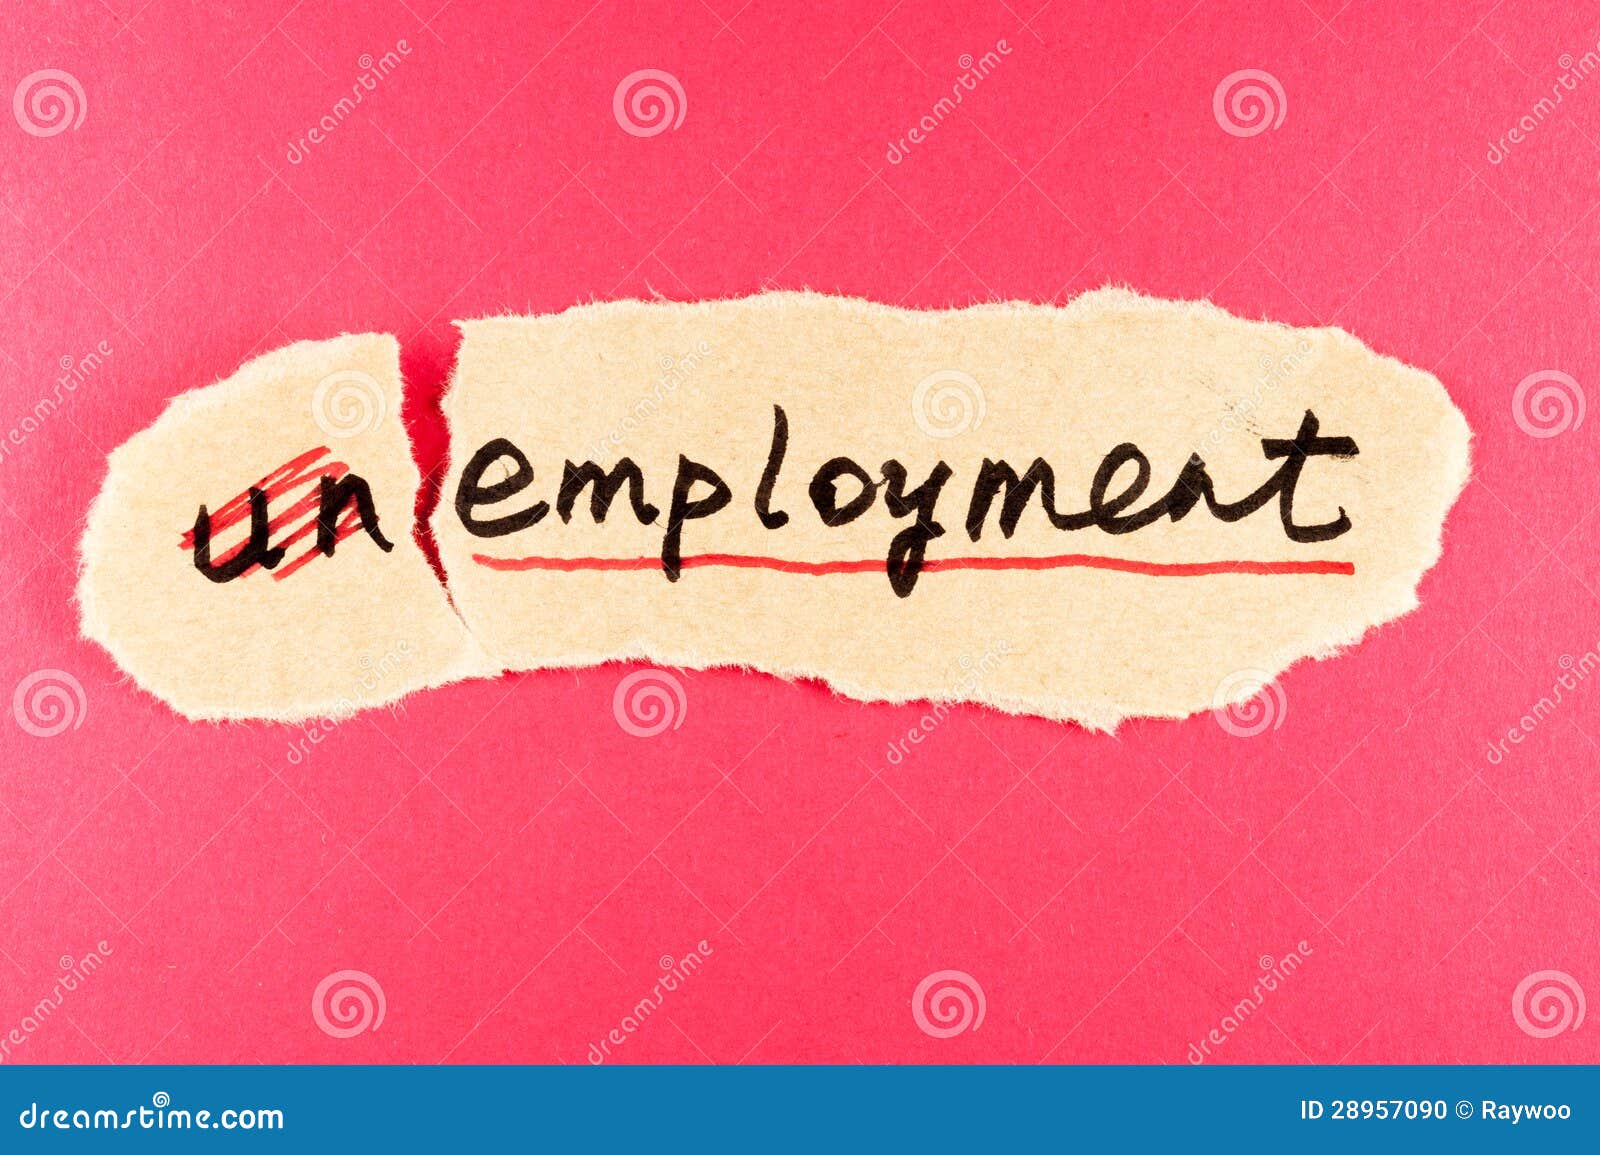 unemployment to employment